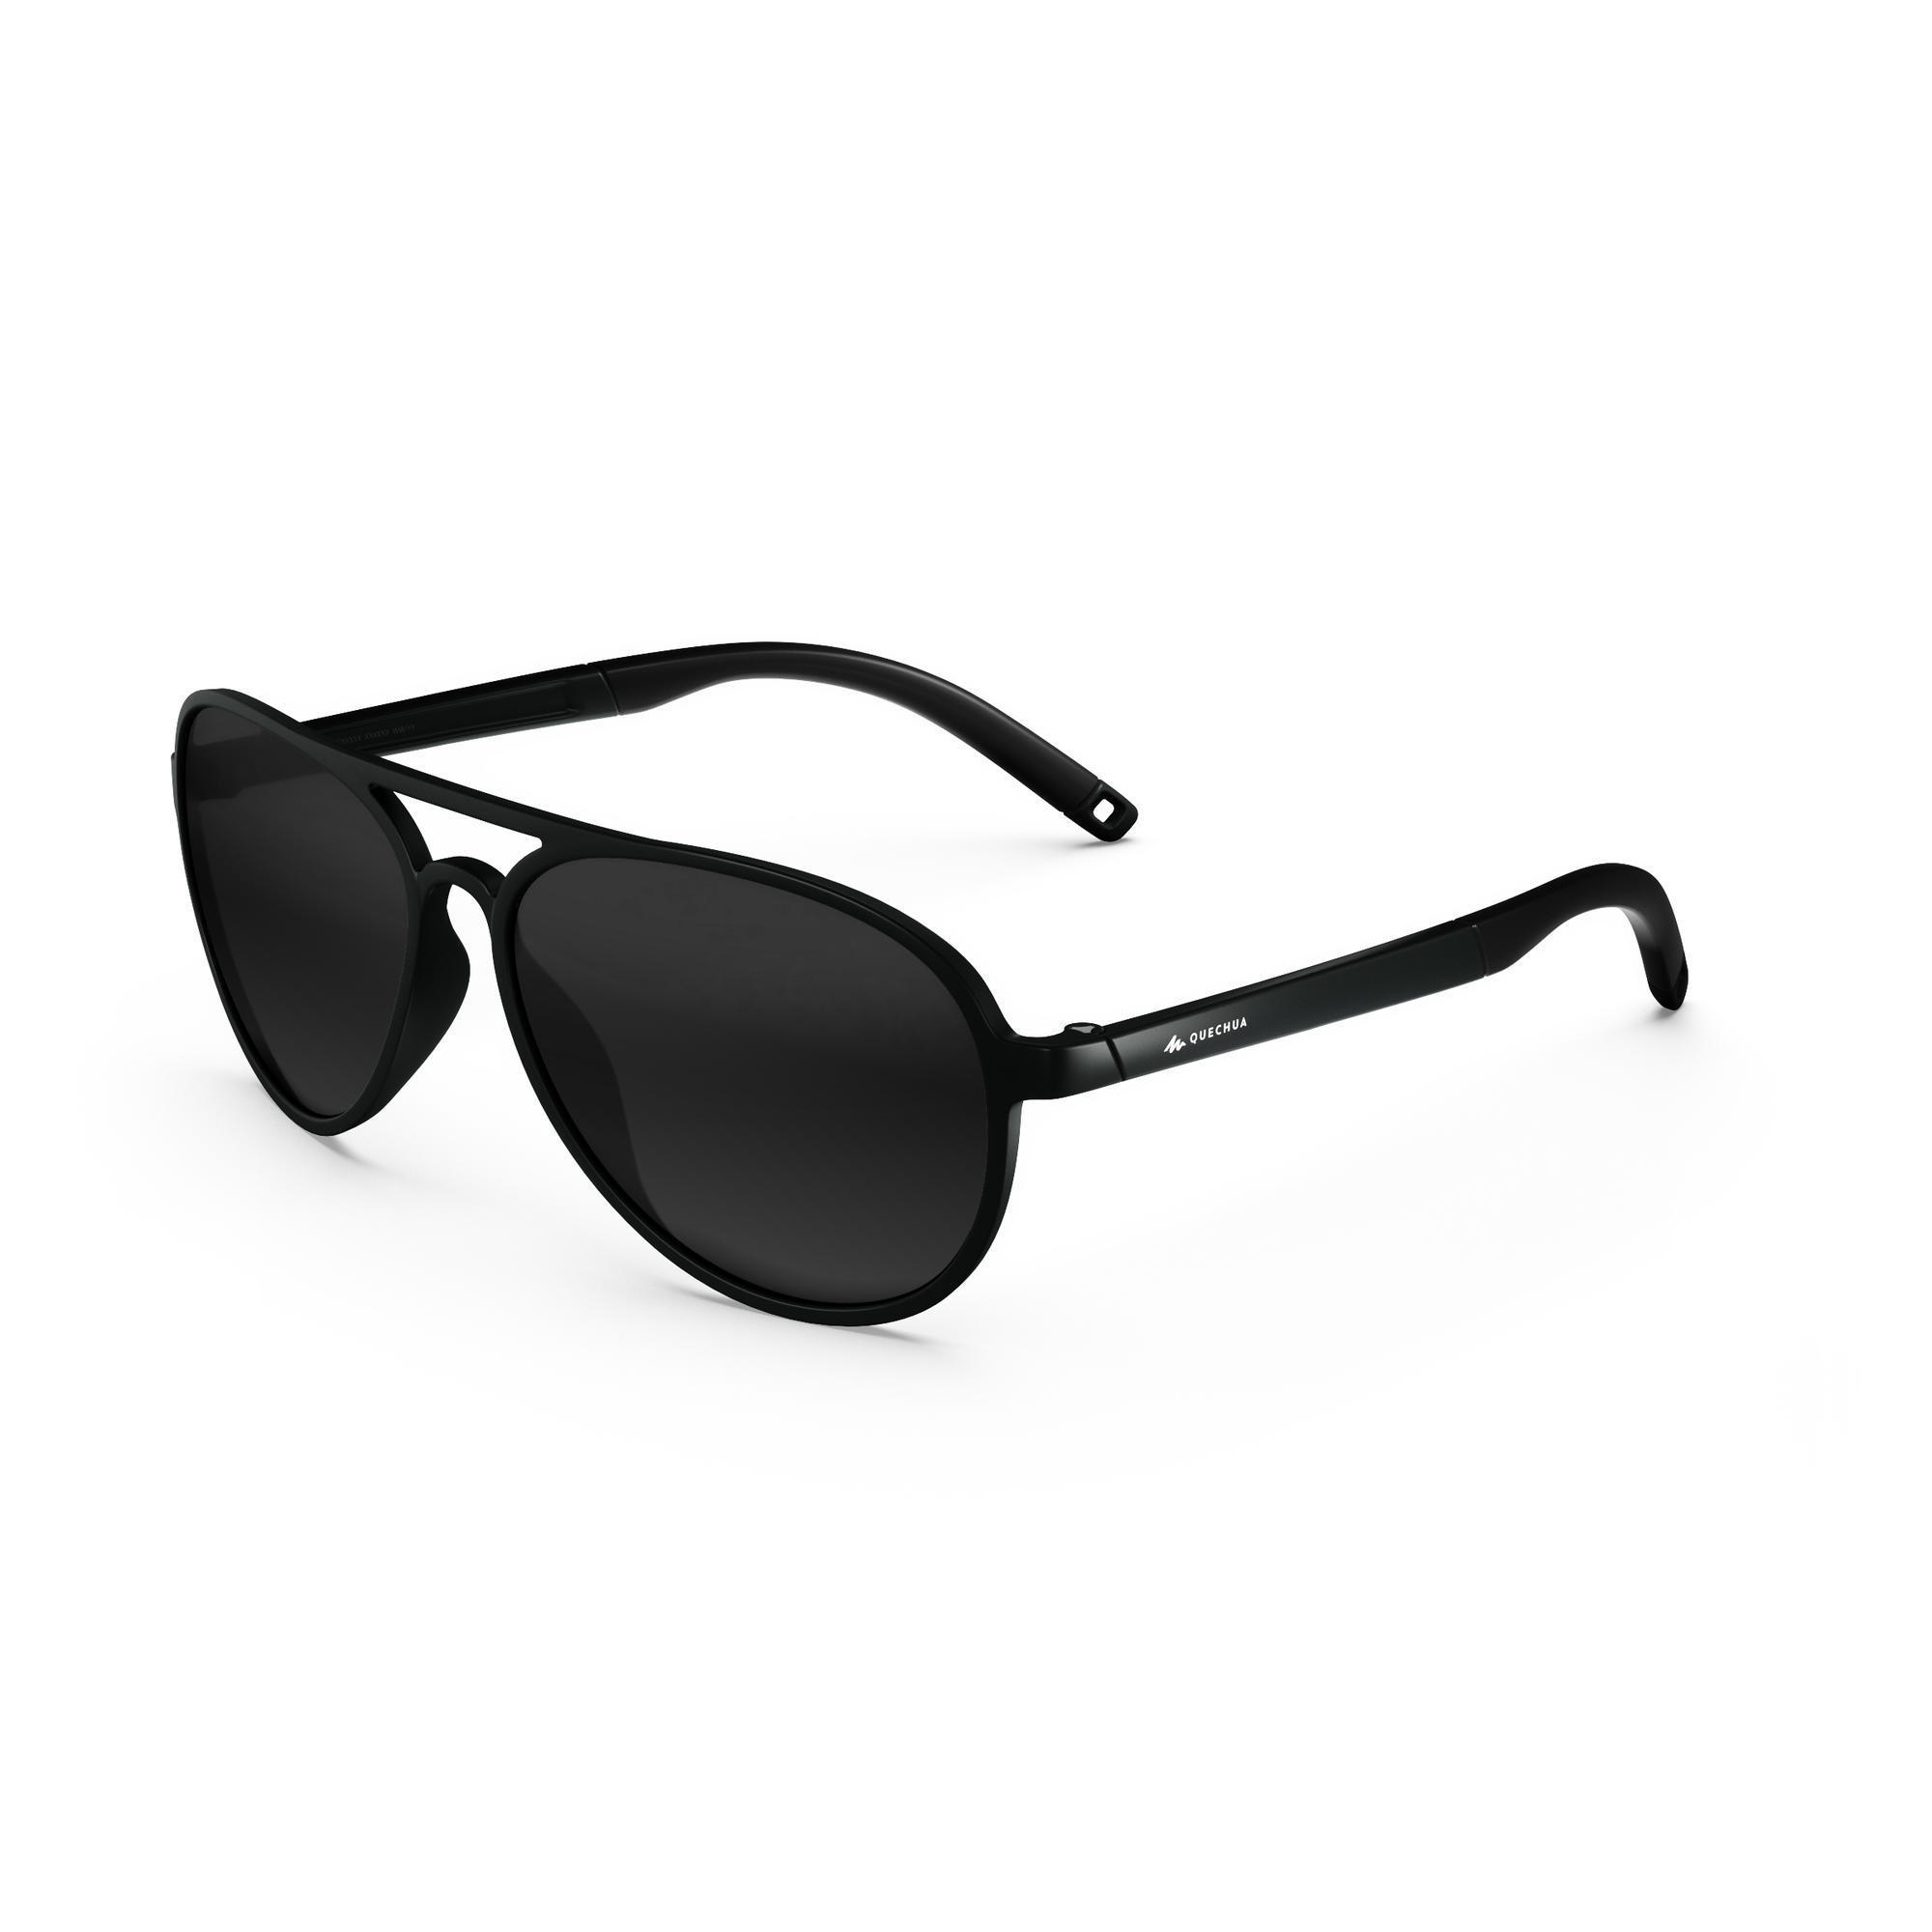 Adults Hiking Sunglasses - MH120 